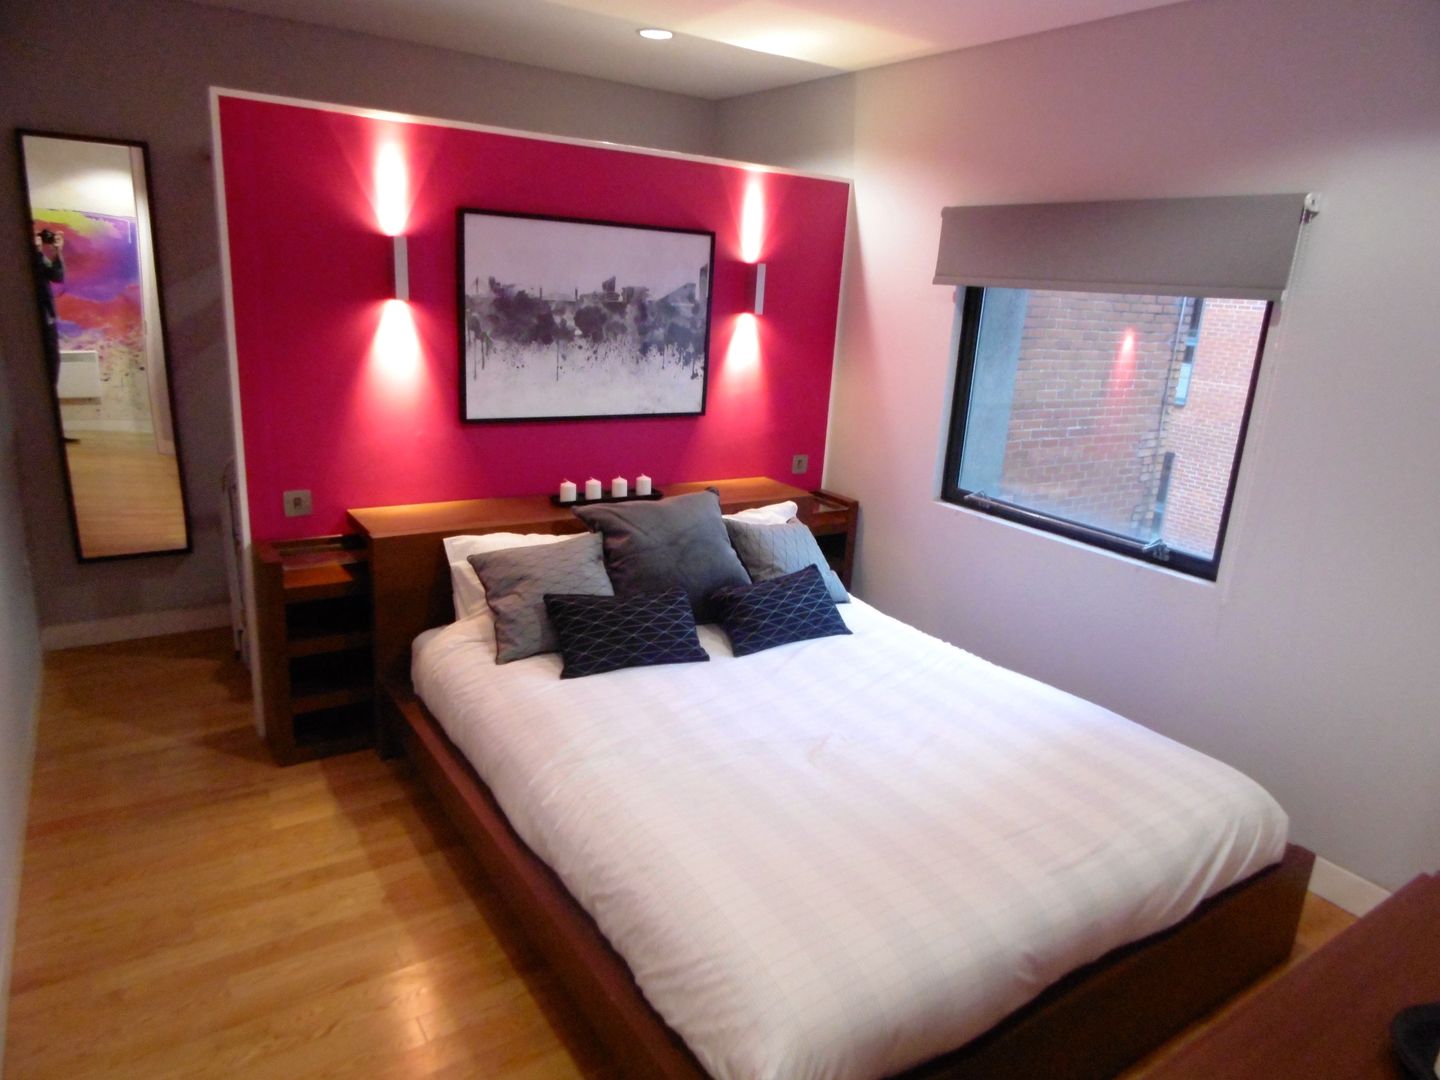 City Centre Apartment, Northern Quarter, Manchester, UK, Flawless Concepts Ltd Flawless Concepts Ltd Camera da letto moderna